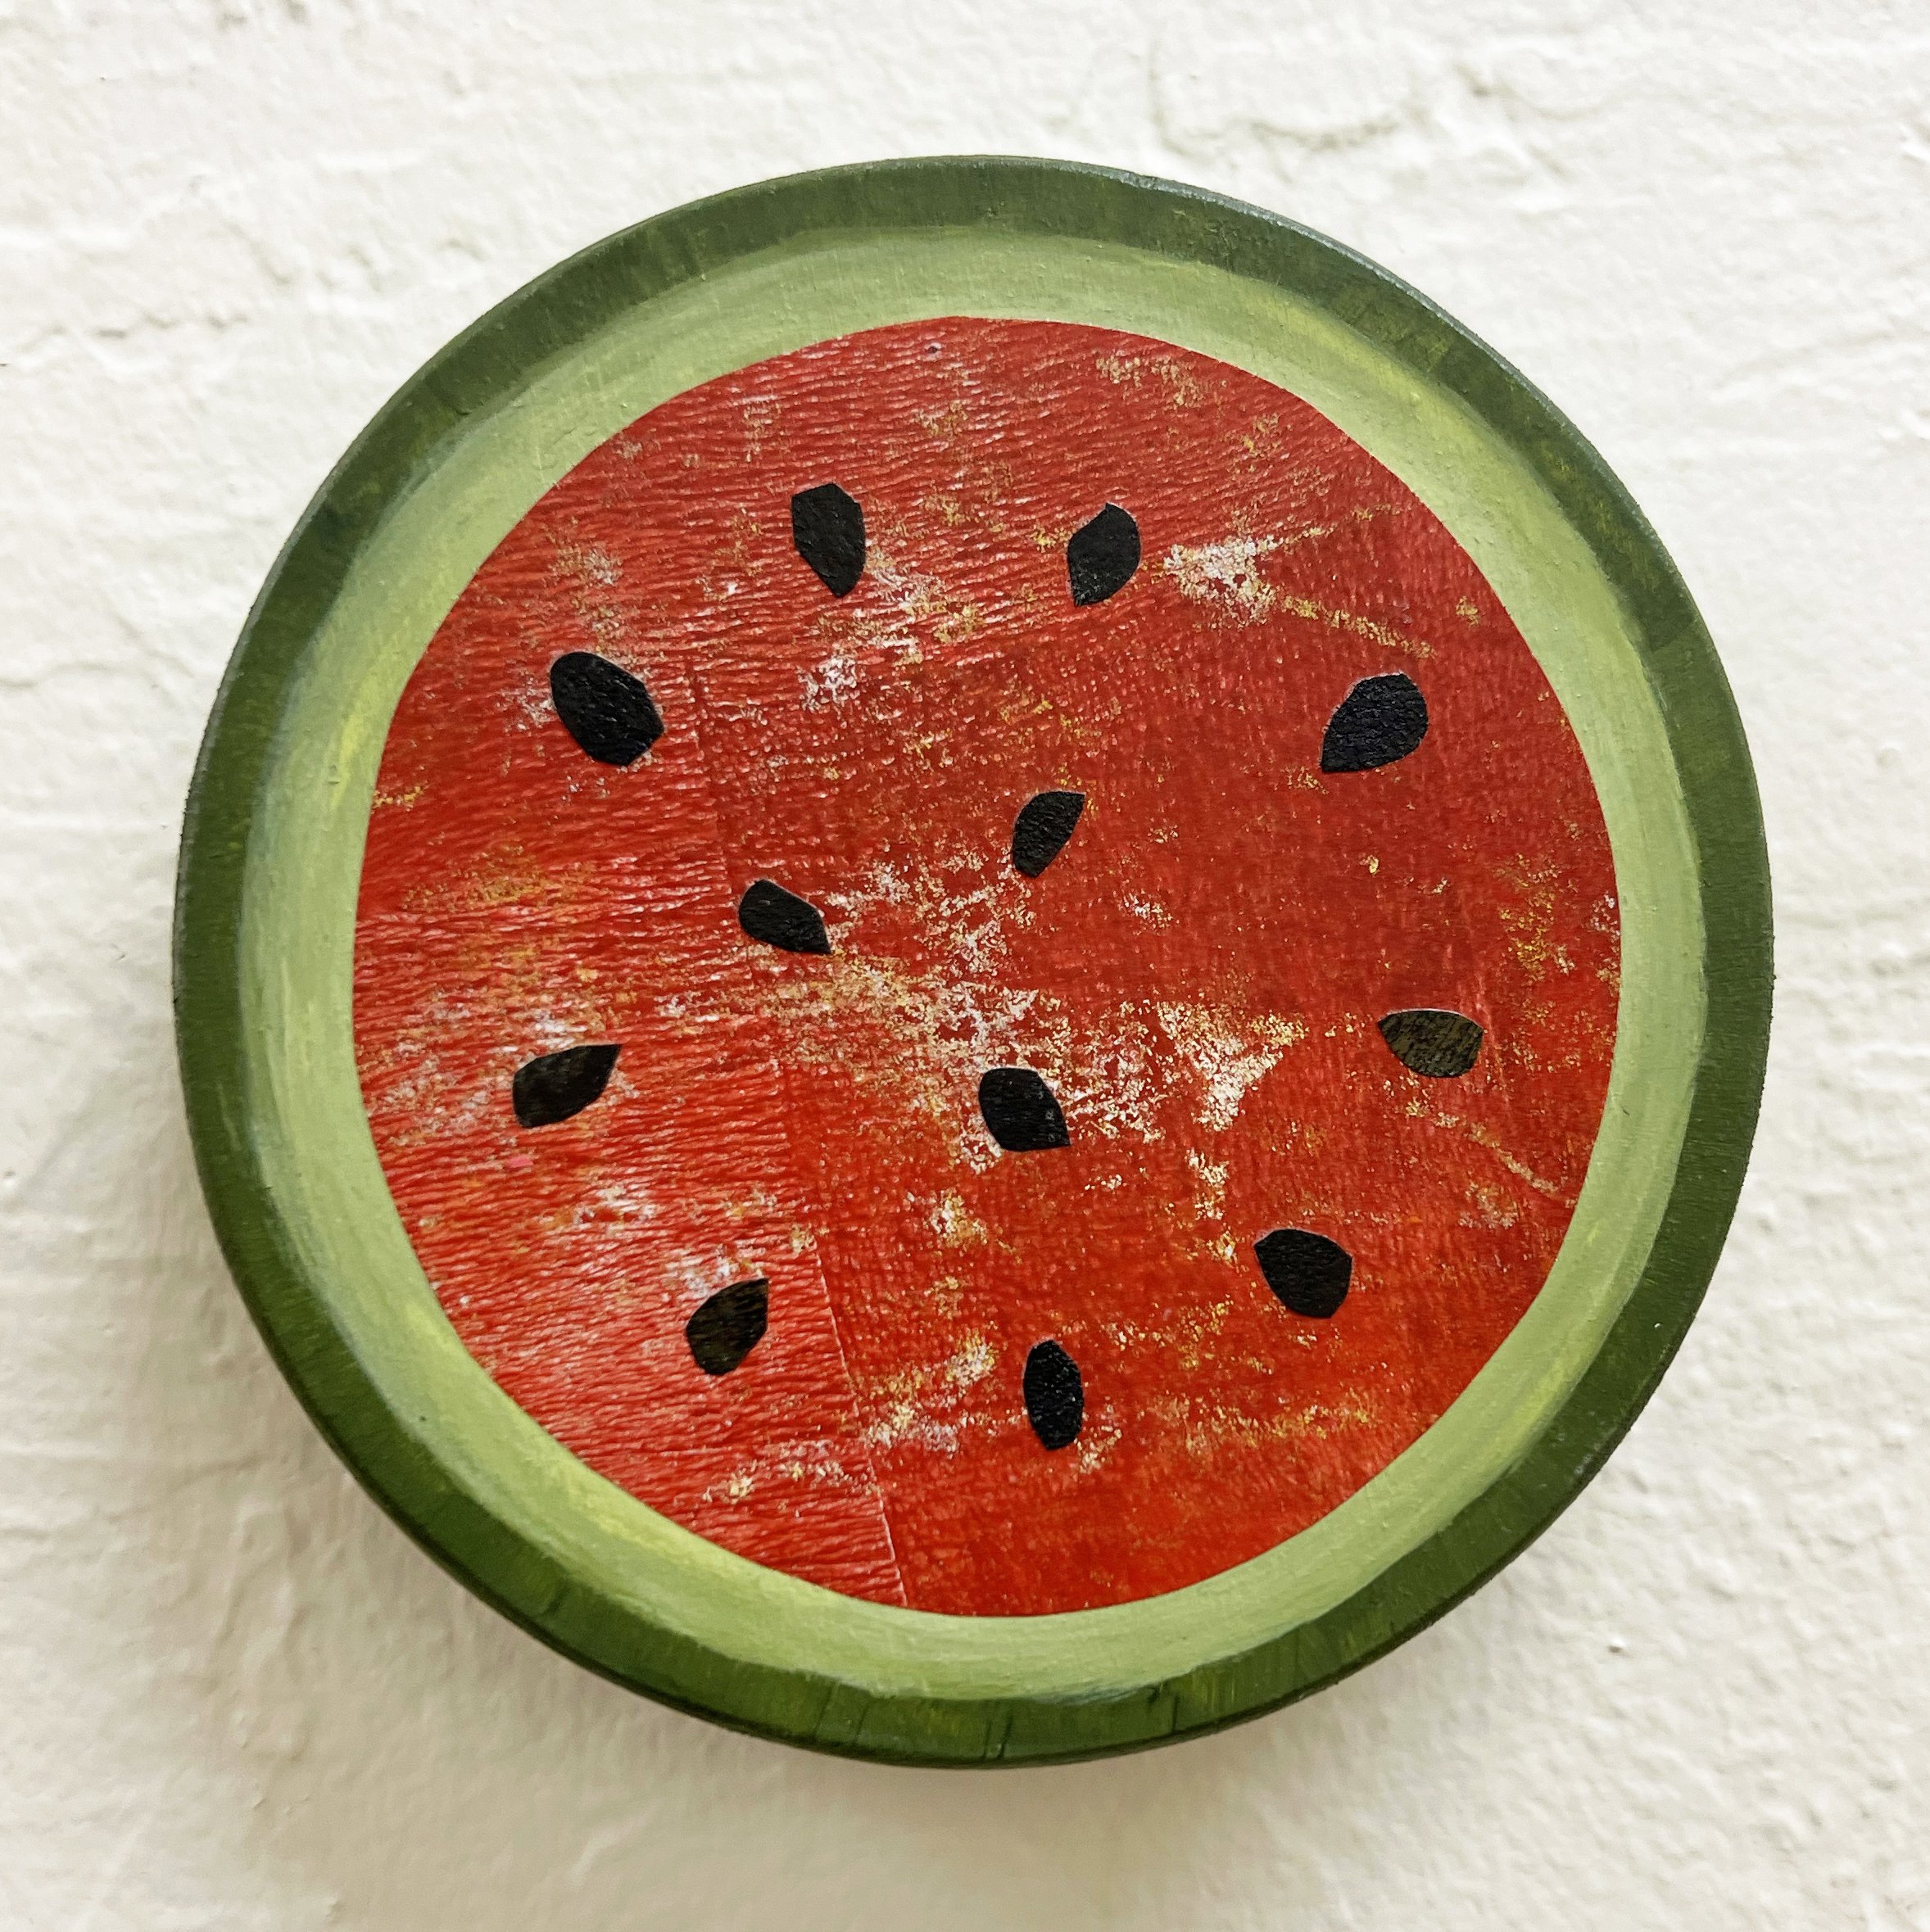 Watermelon Juicy Fruit by Stephanie Thwaites